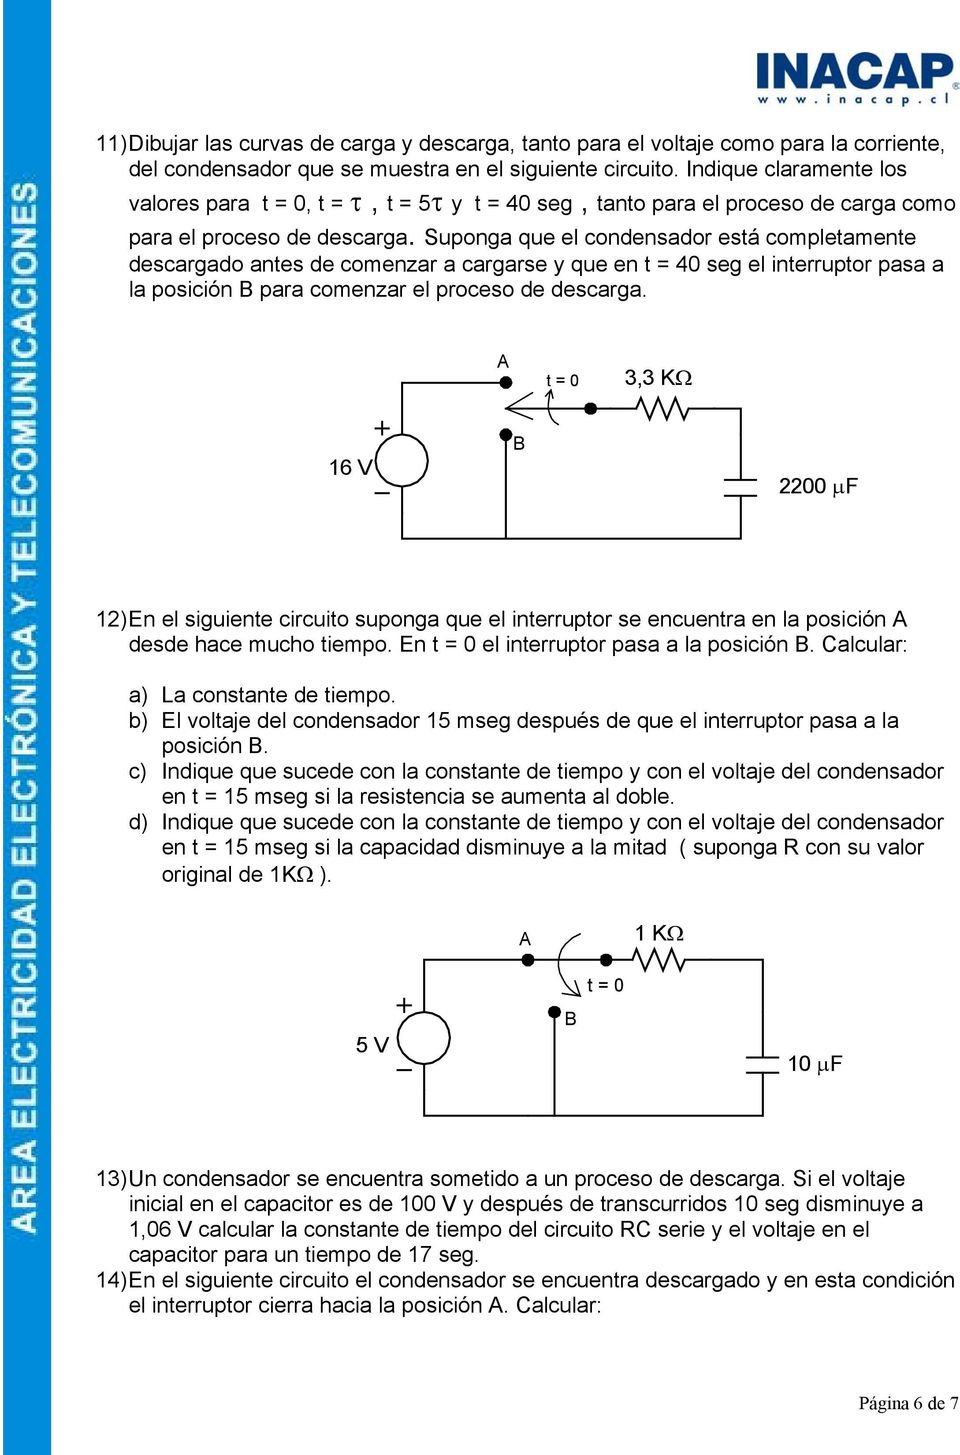 Suponga que el condensador está completamente descargado antes de comenzar a cargarse y que en t = 40 seg el interruptor pasa a la posición B para comenzar el proceso de descarga.